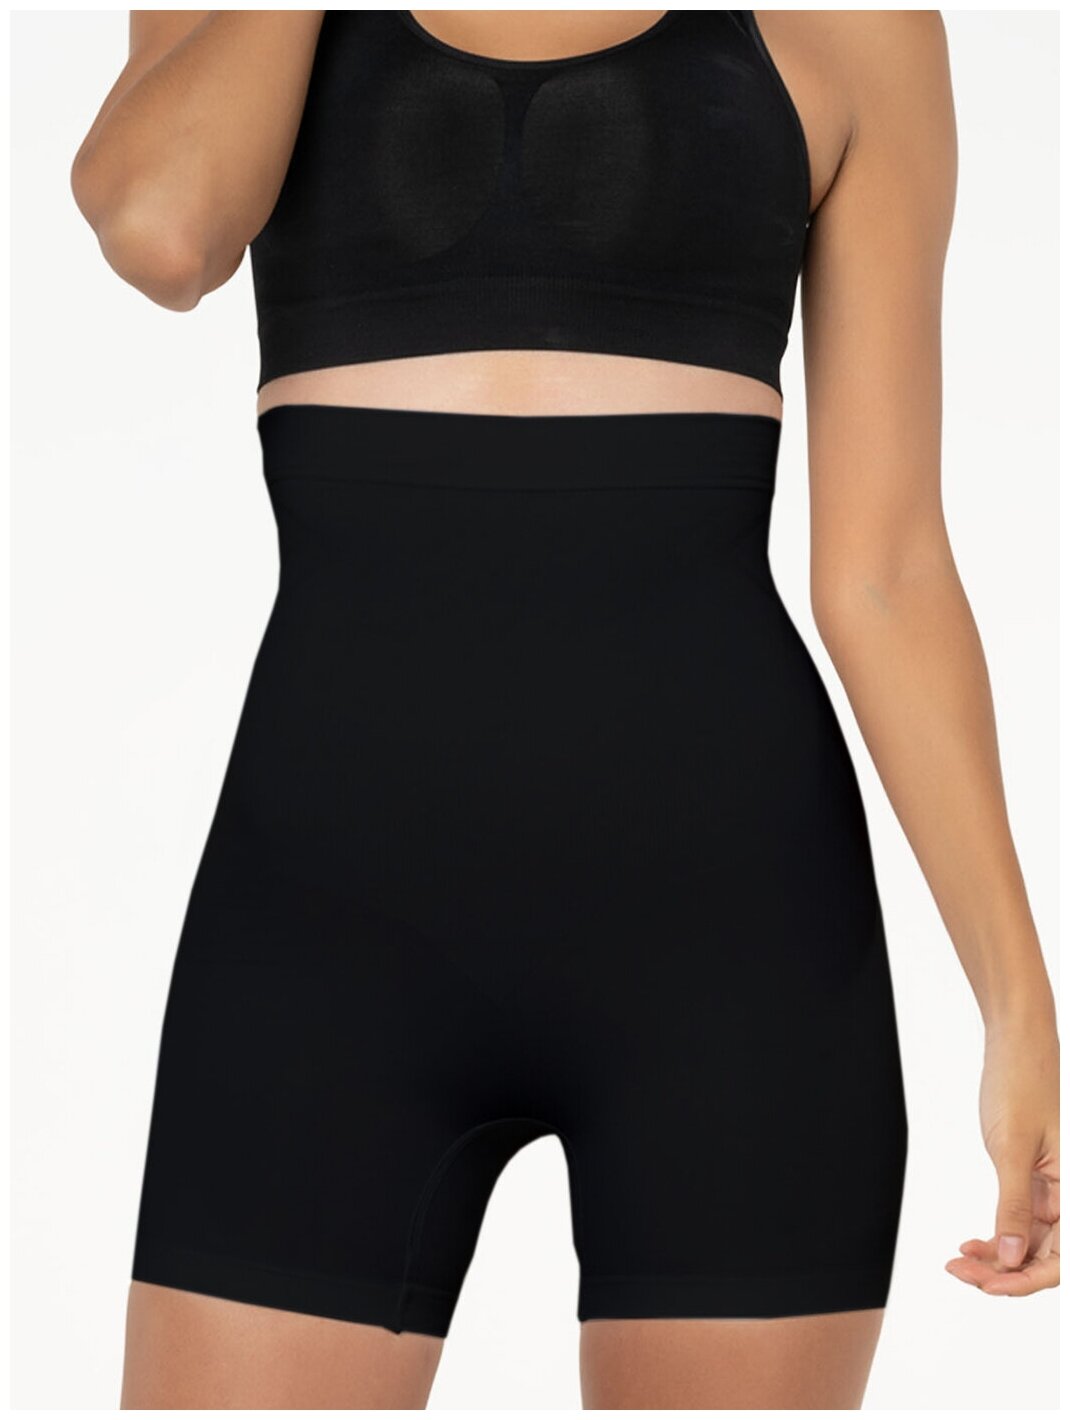 Корректирующие шорты женские Formeasy черные XL